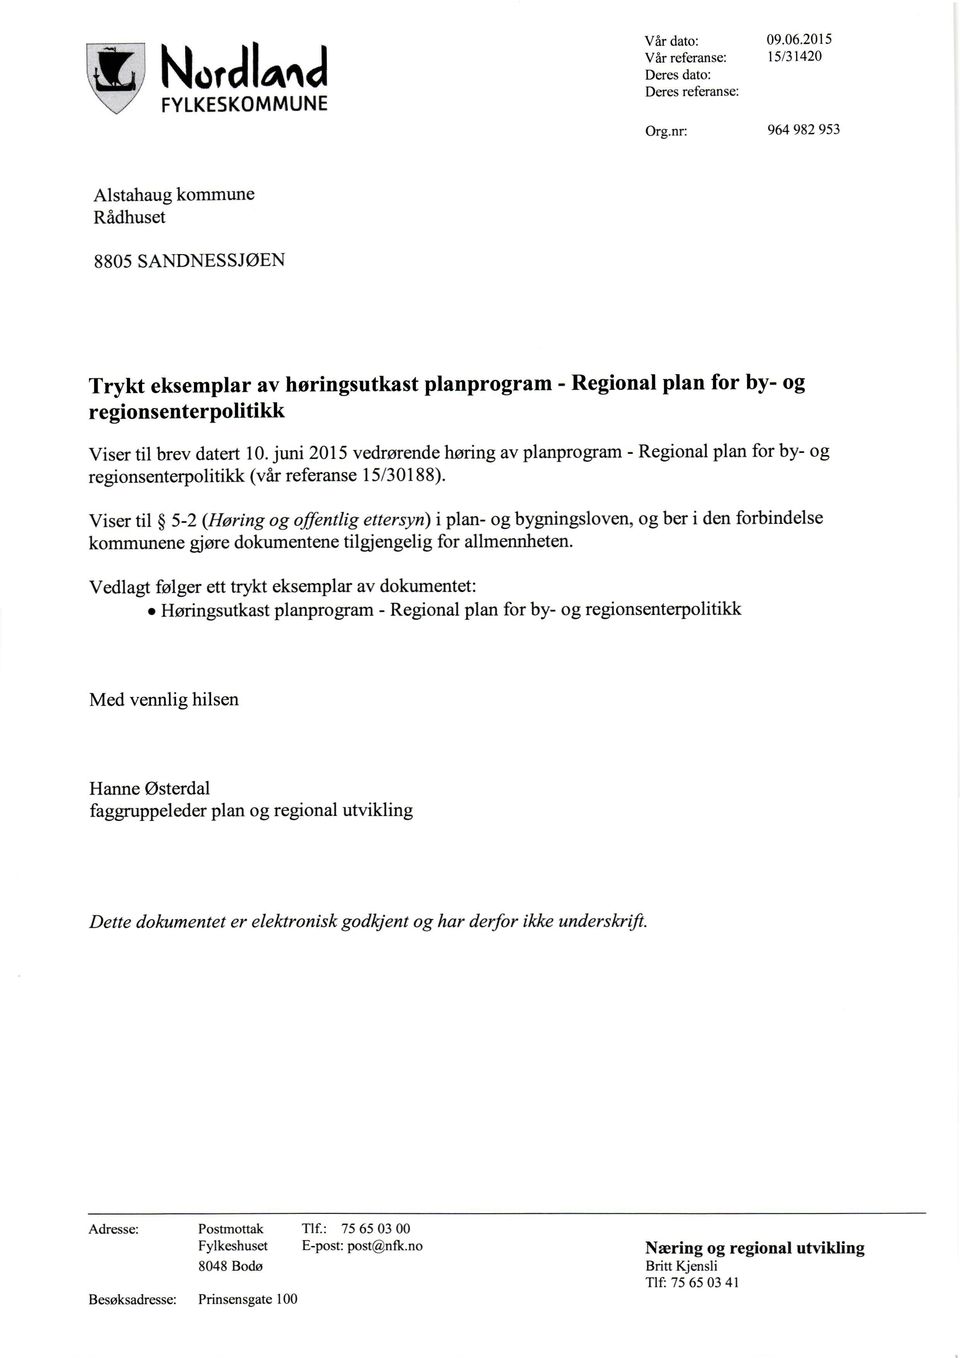 regionsenterpolitikk Viser til brev datert 10. juni 2015 vedrørende høring av planprogram - Regional plan for by- og regionsenterpolitikk (vår referanse 15/30188).